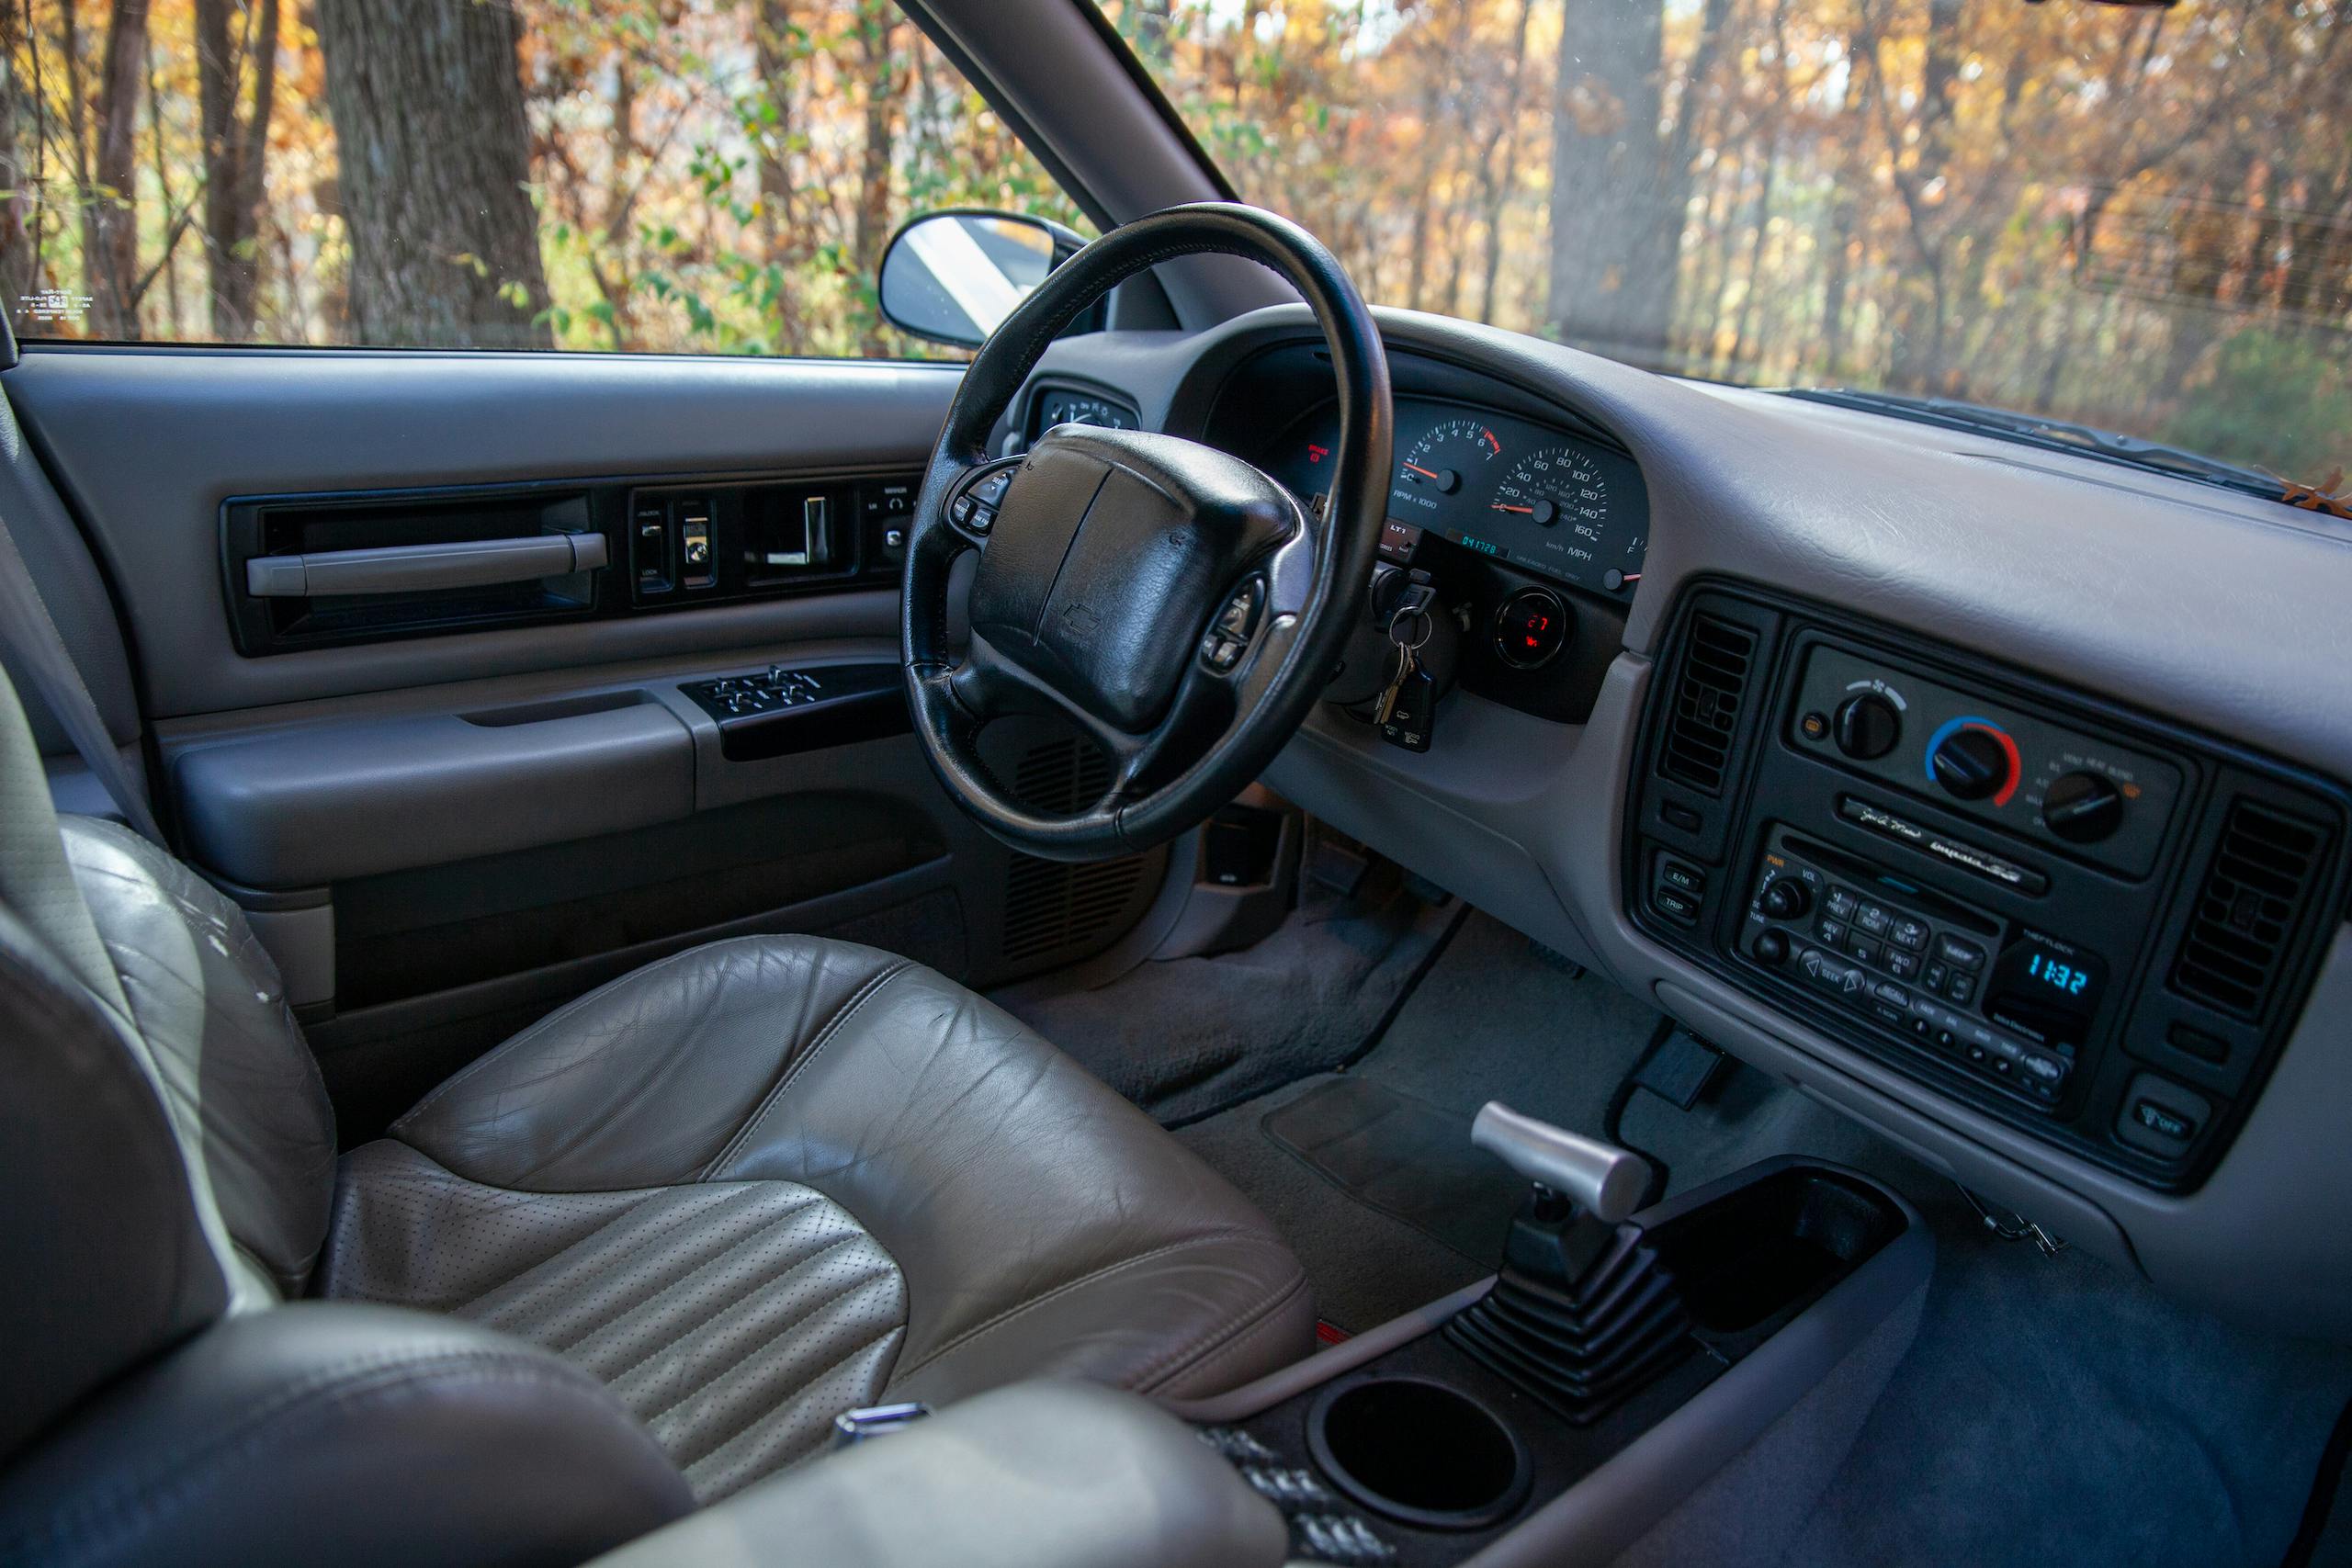 1996 Chevrolet Impala SS interior front angled